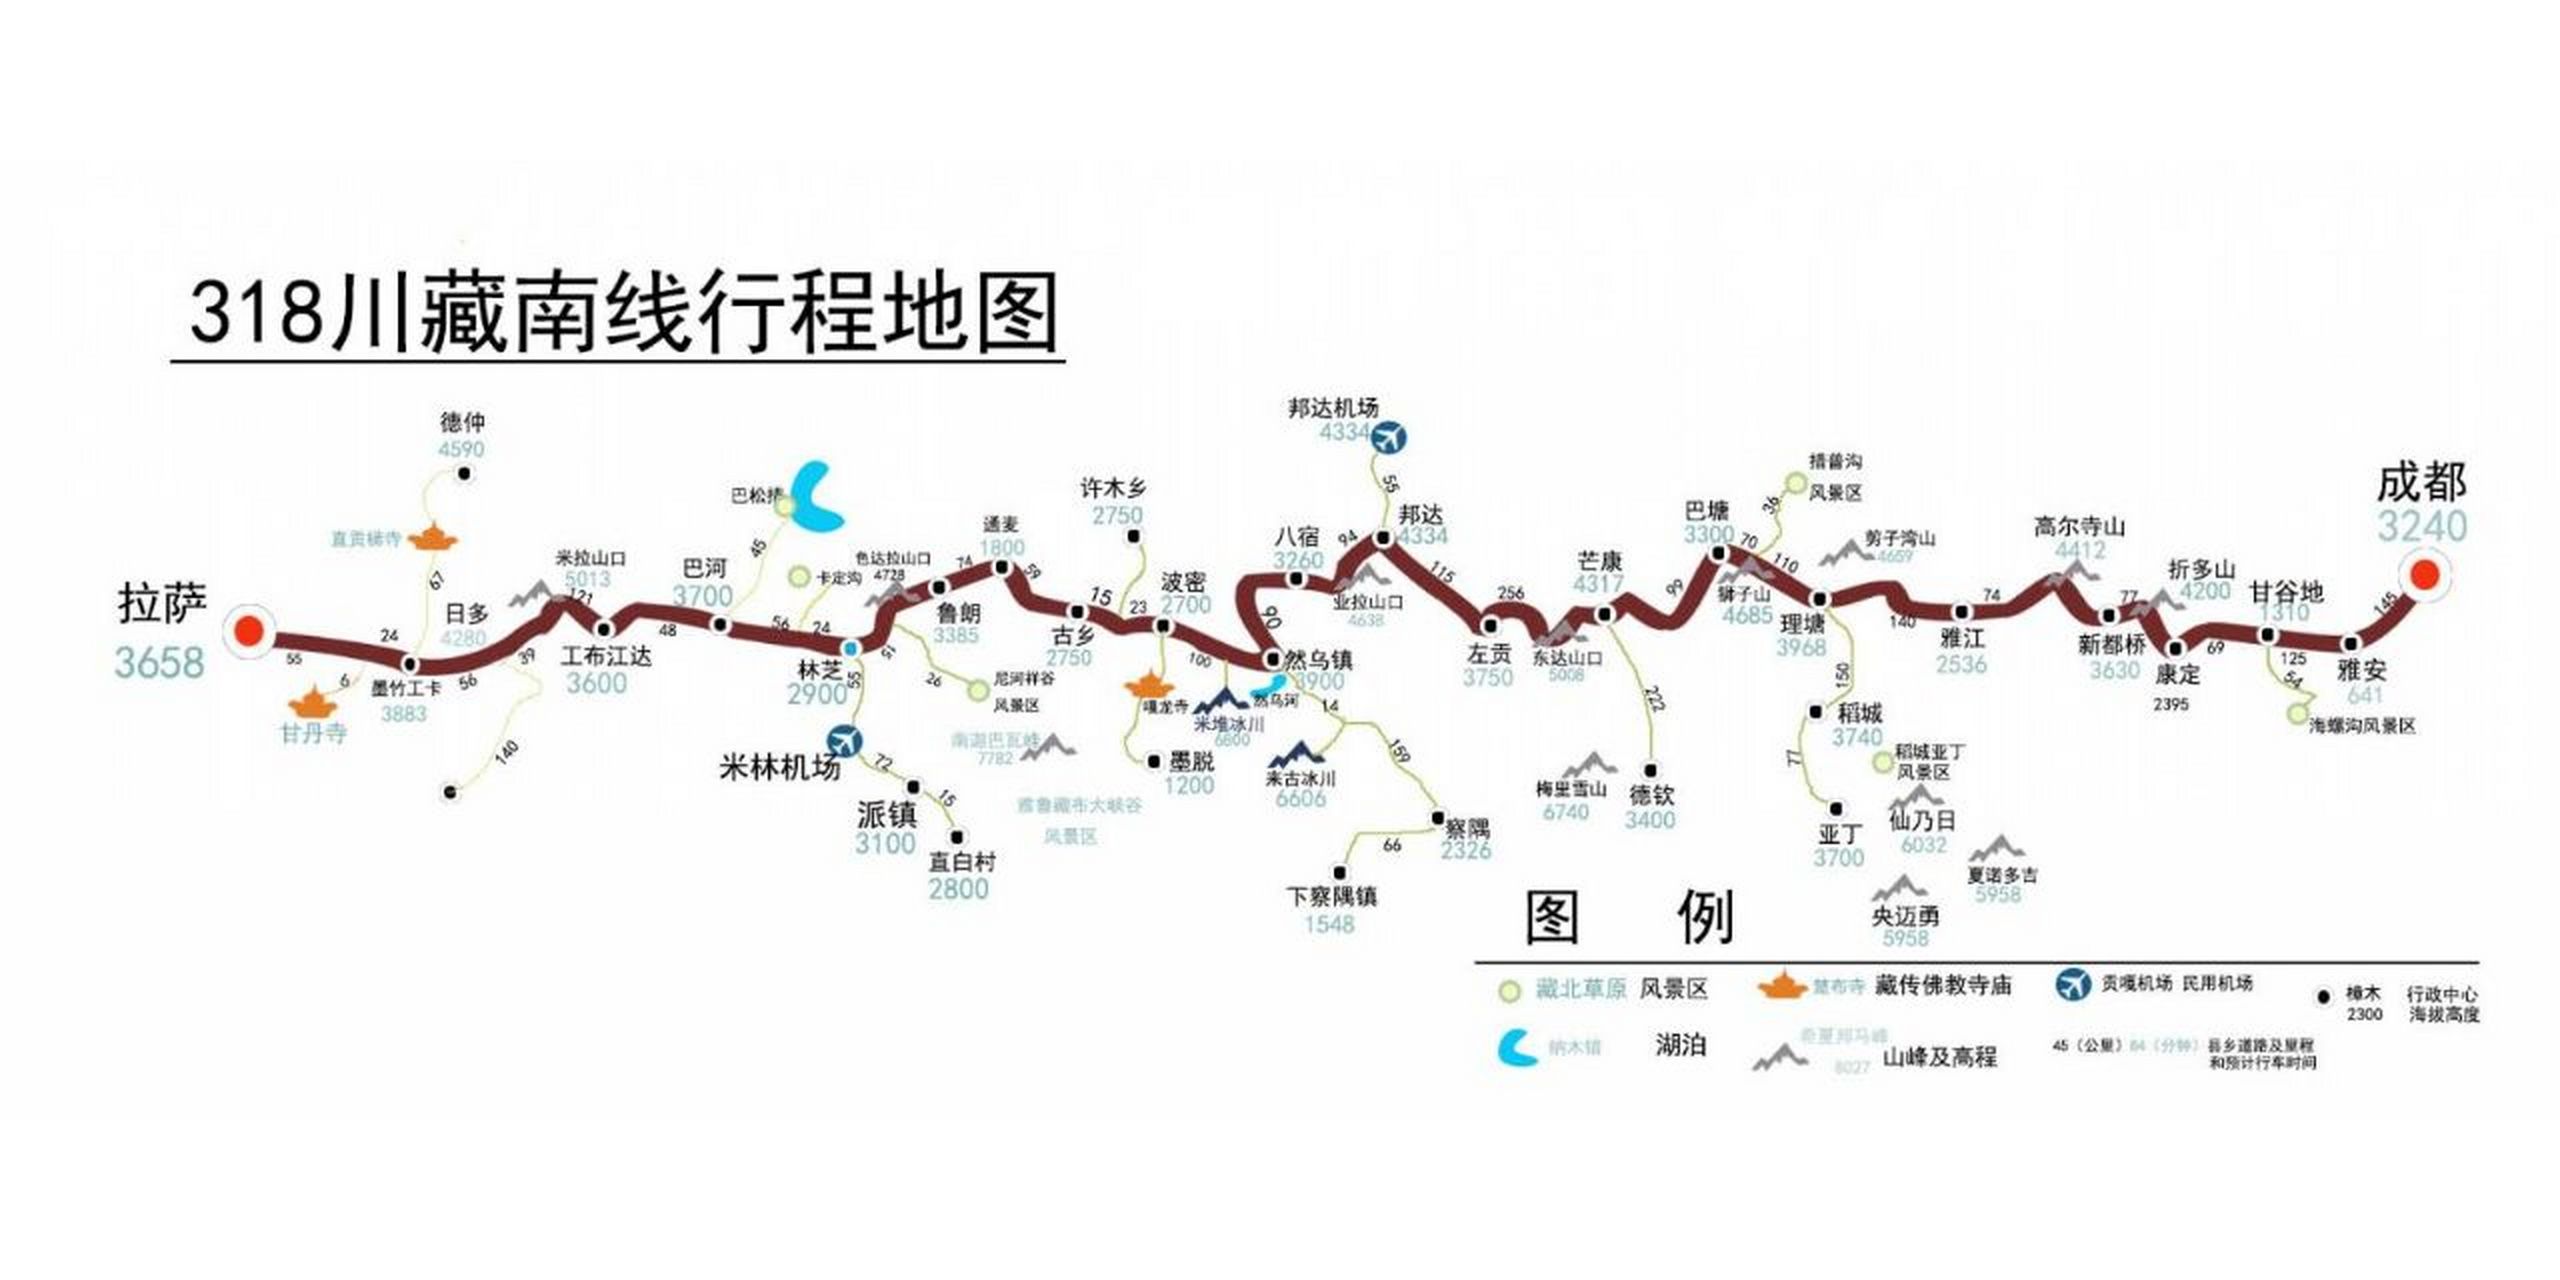 318川藏南线于1958年正式通车